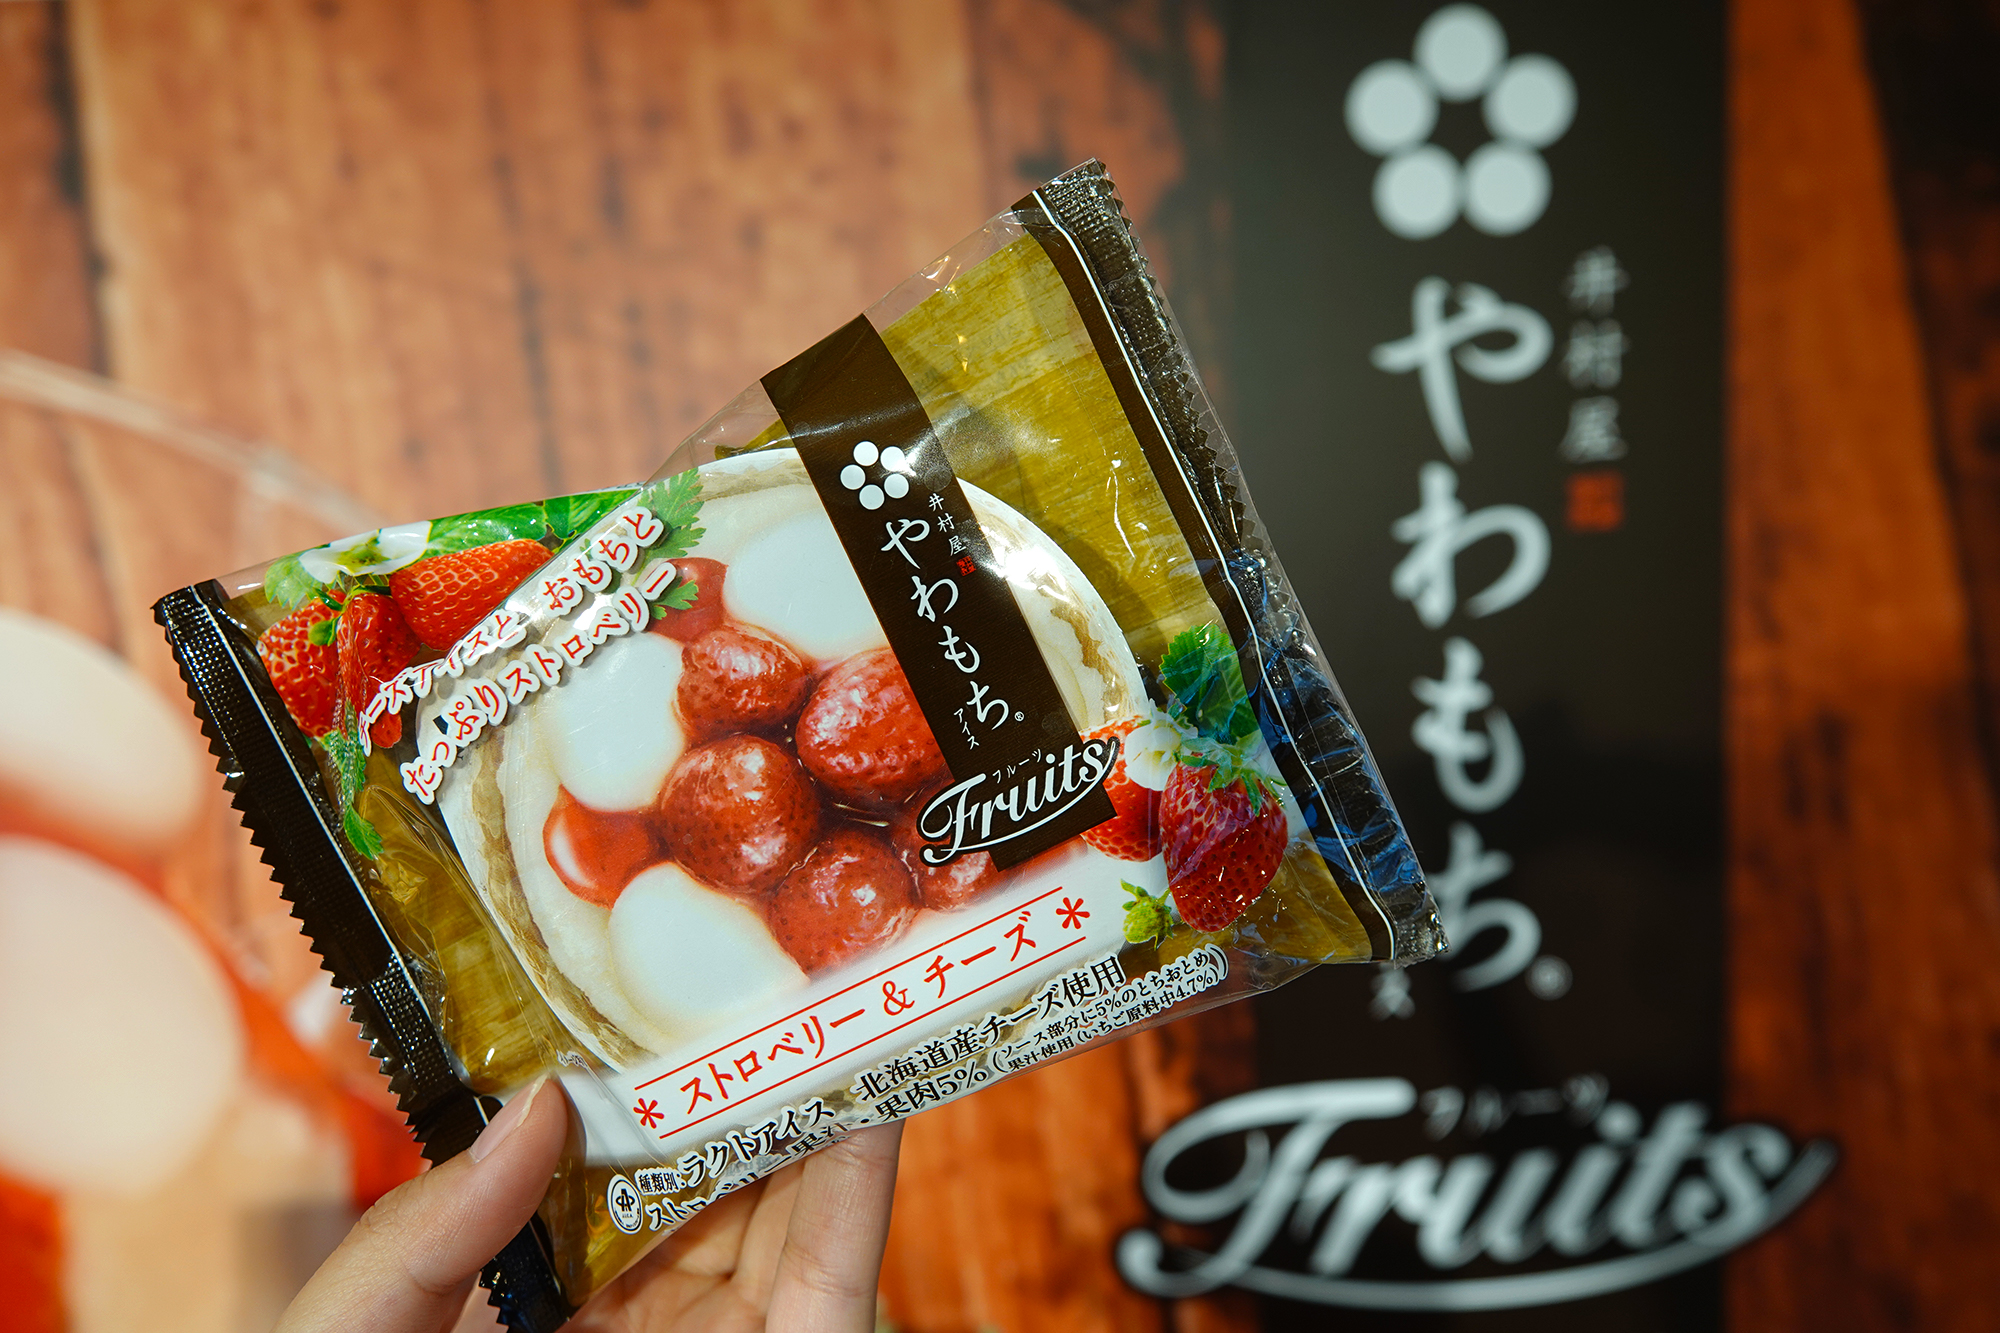 有片 日本百年冰點心專家 井村屋 新品上市 草莓 芒果麻糬湯圓冰戀愛滋味大爆發 上報 生活